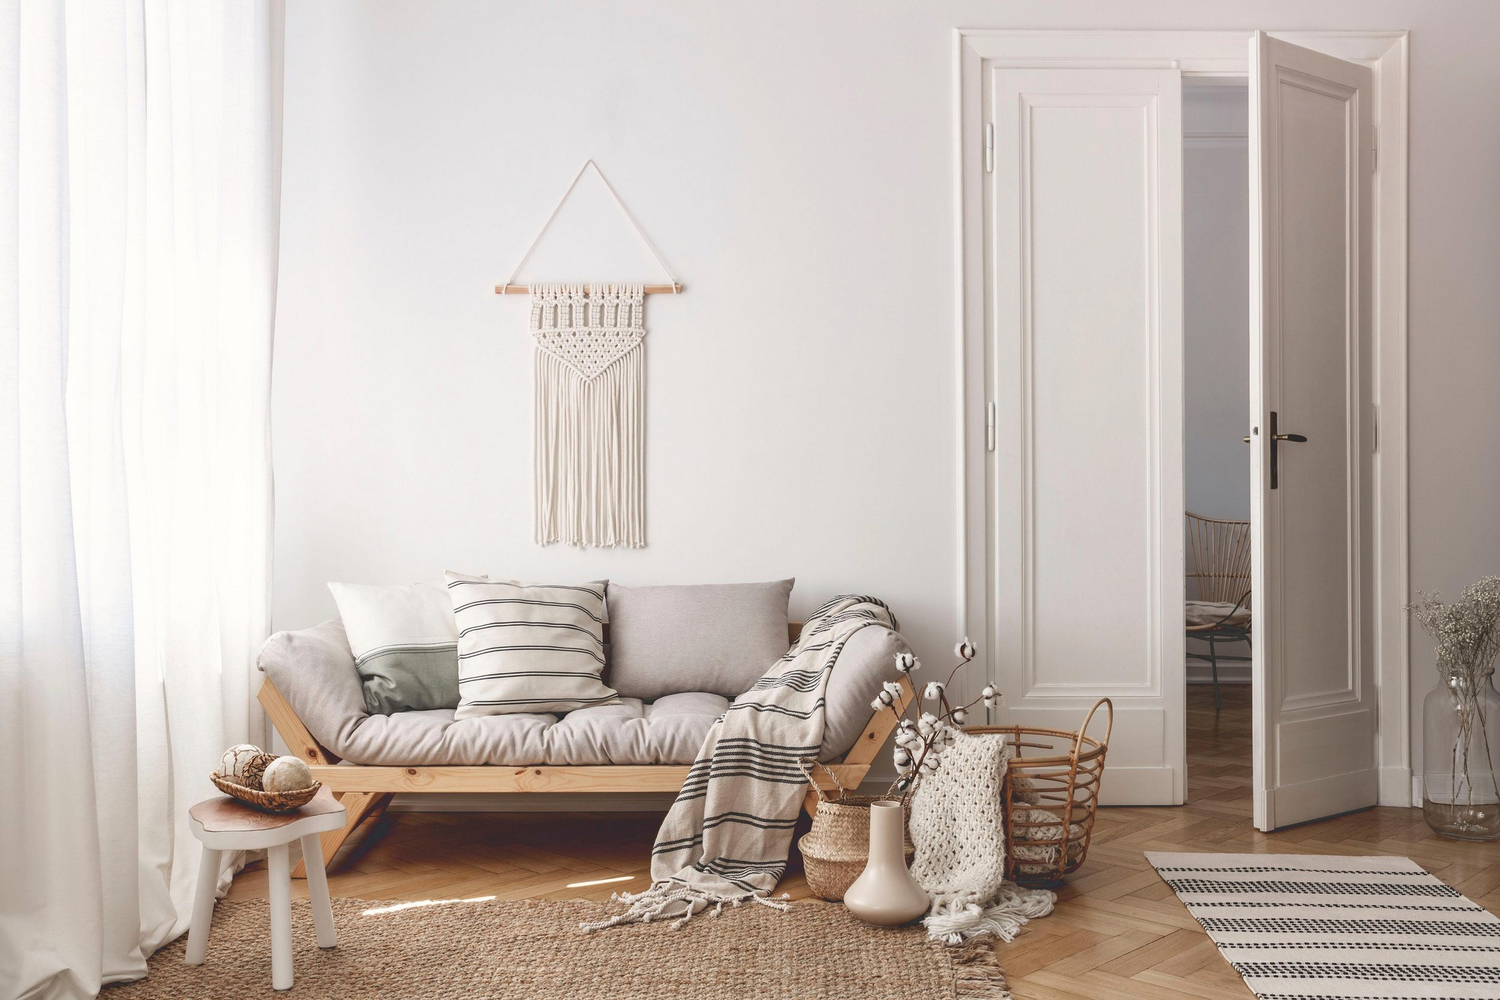 Купить деревянный диван в стиле LOFT для гостиной комнаты